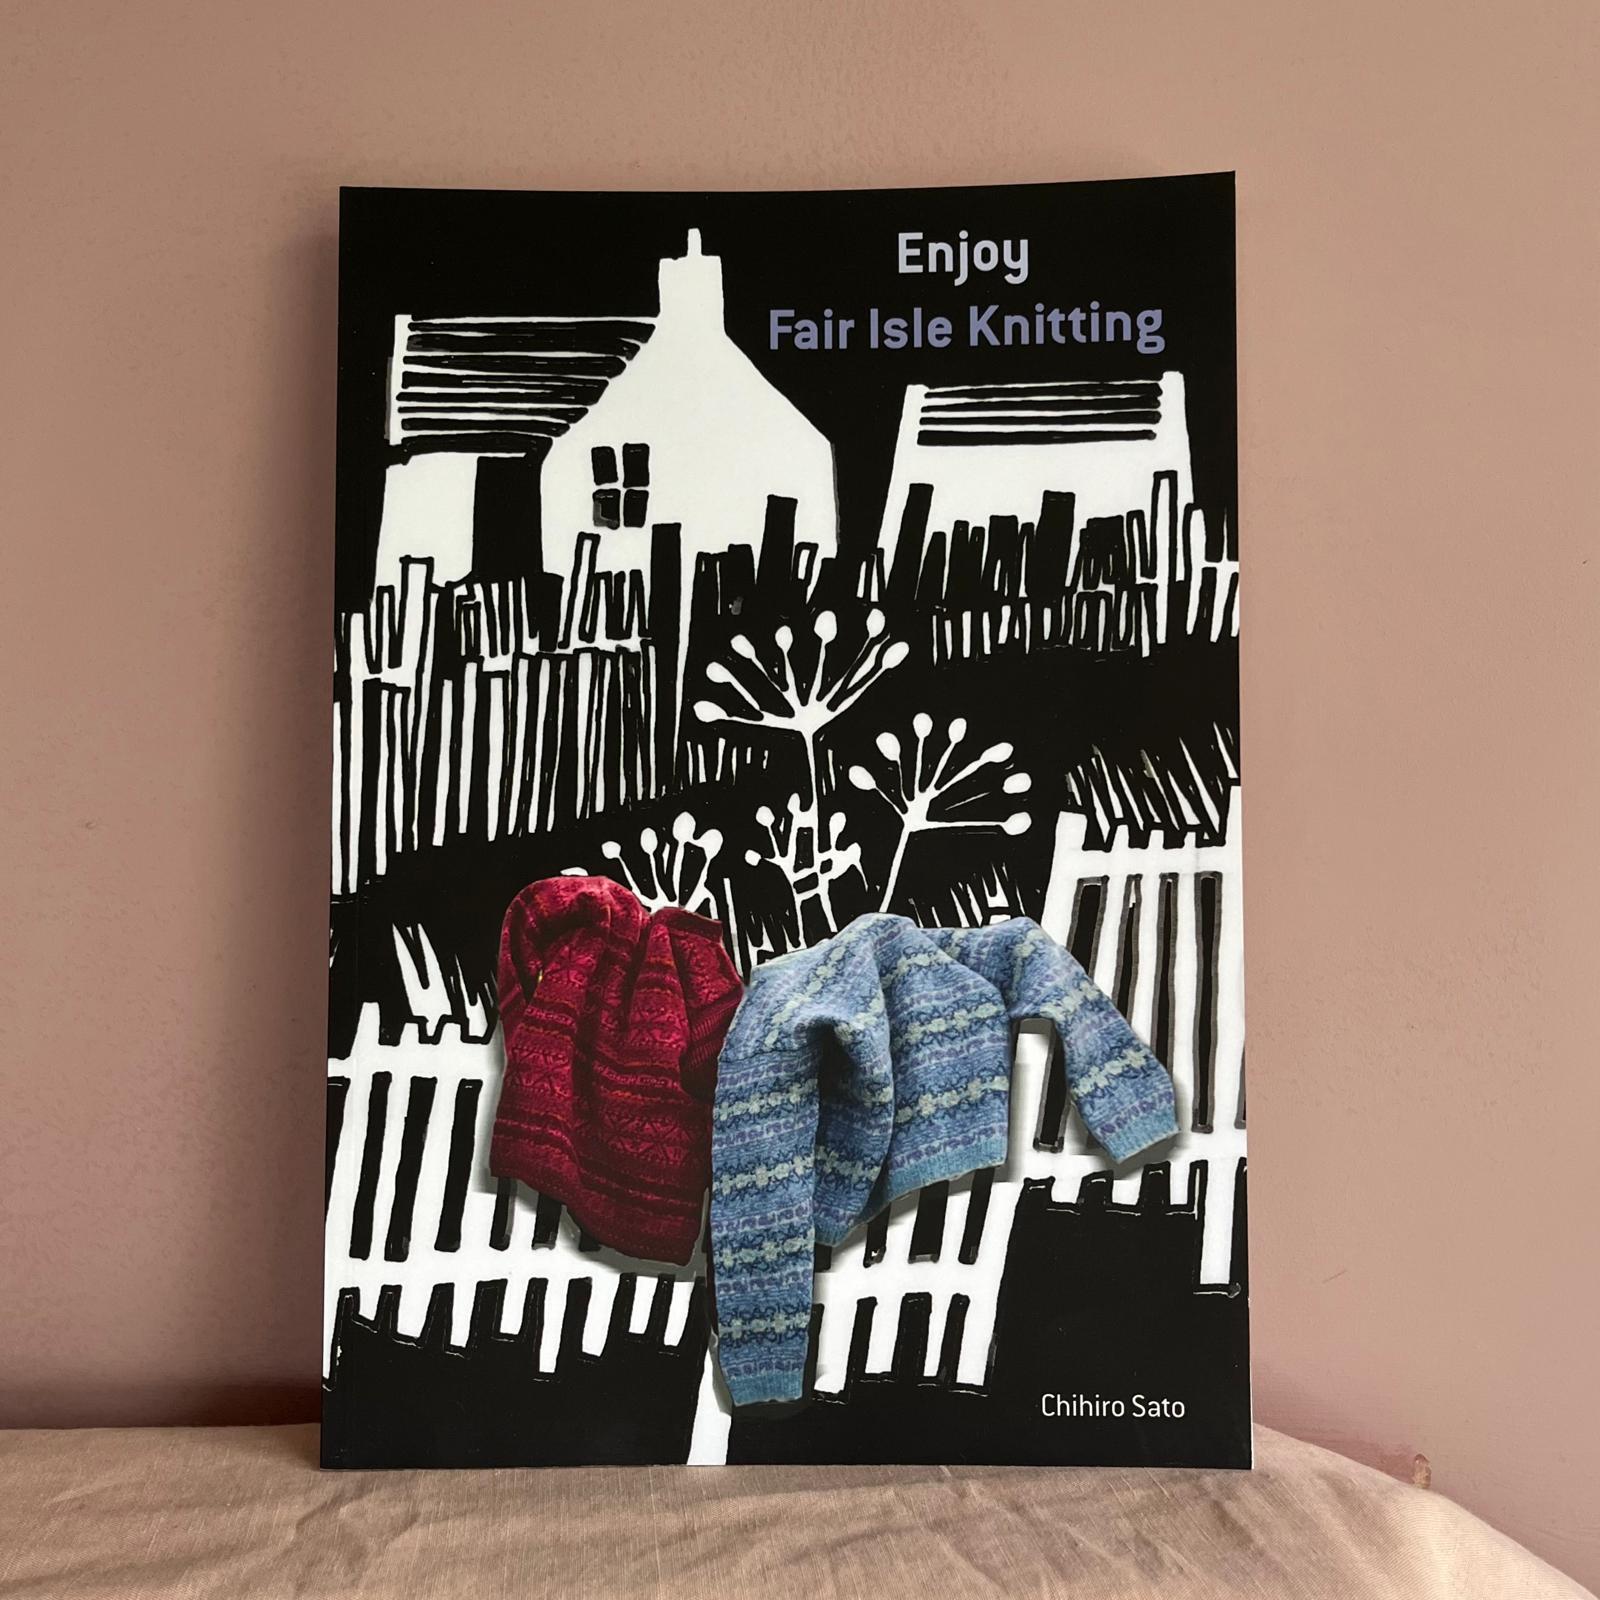 Enjoy Fair Isle Knitting by Chihiro Sato